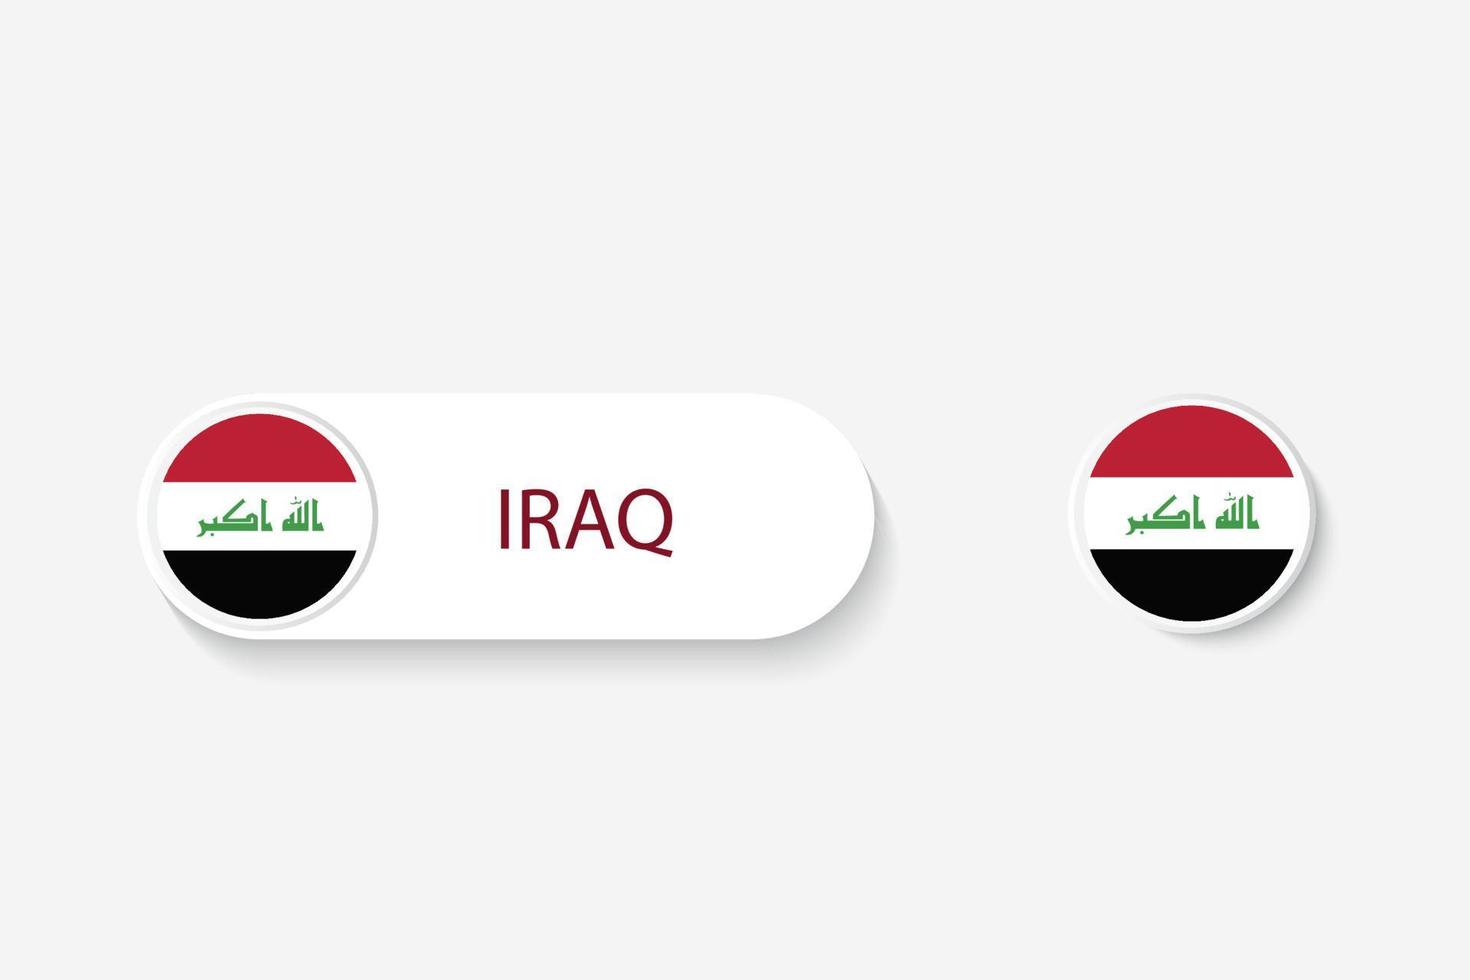 bandiera del pulsante iracheno nell'illustrazione di forma ovale con la parola dell'iraq. e pulsante bandiera irachena. vettore